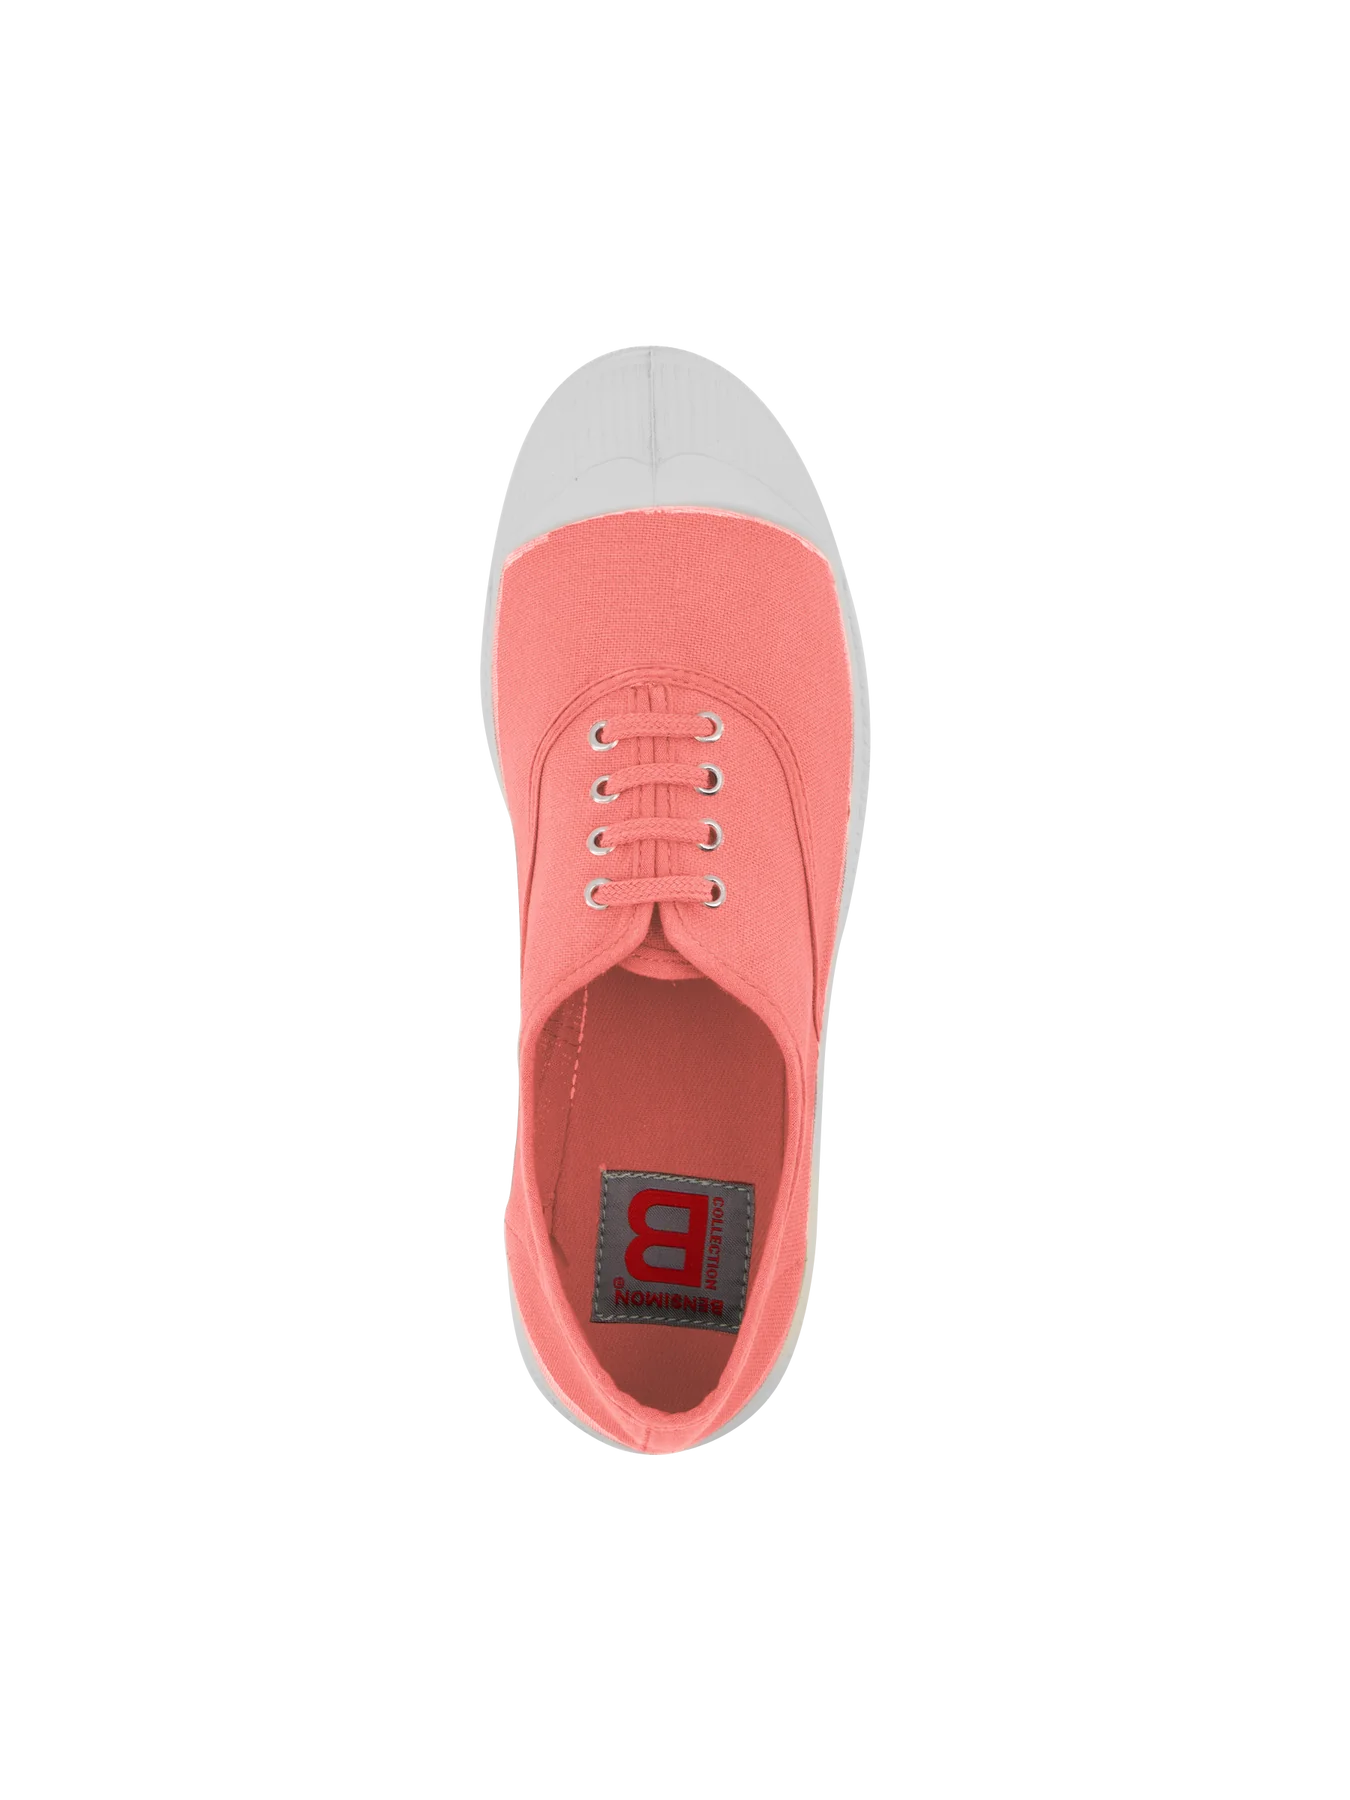 BENSIMON Tennis Lacet Flamingo - Tenis Ayakkabısı